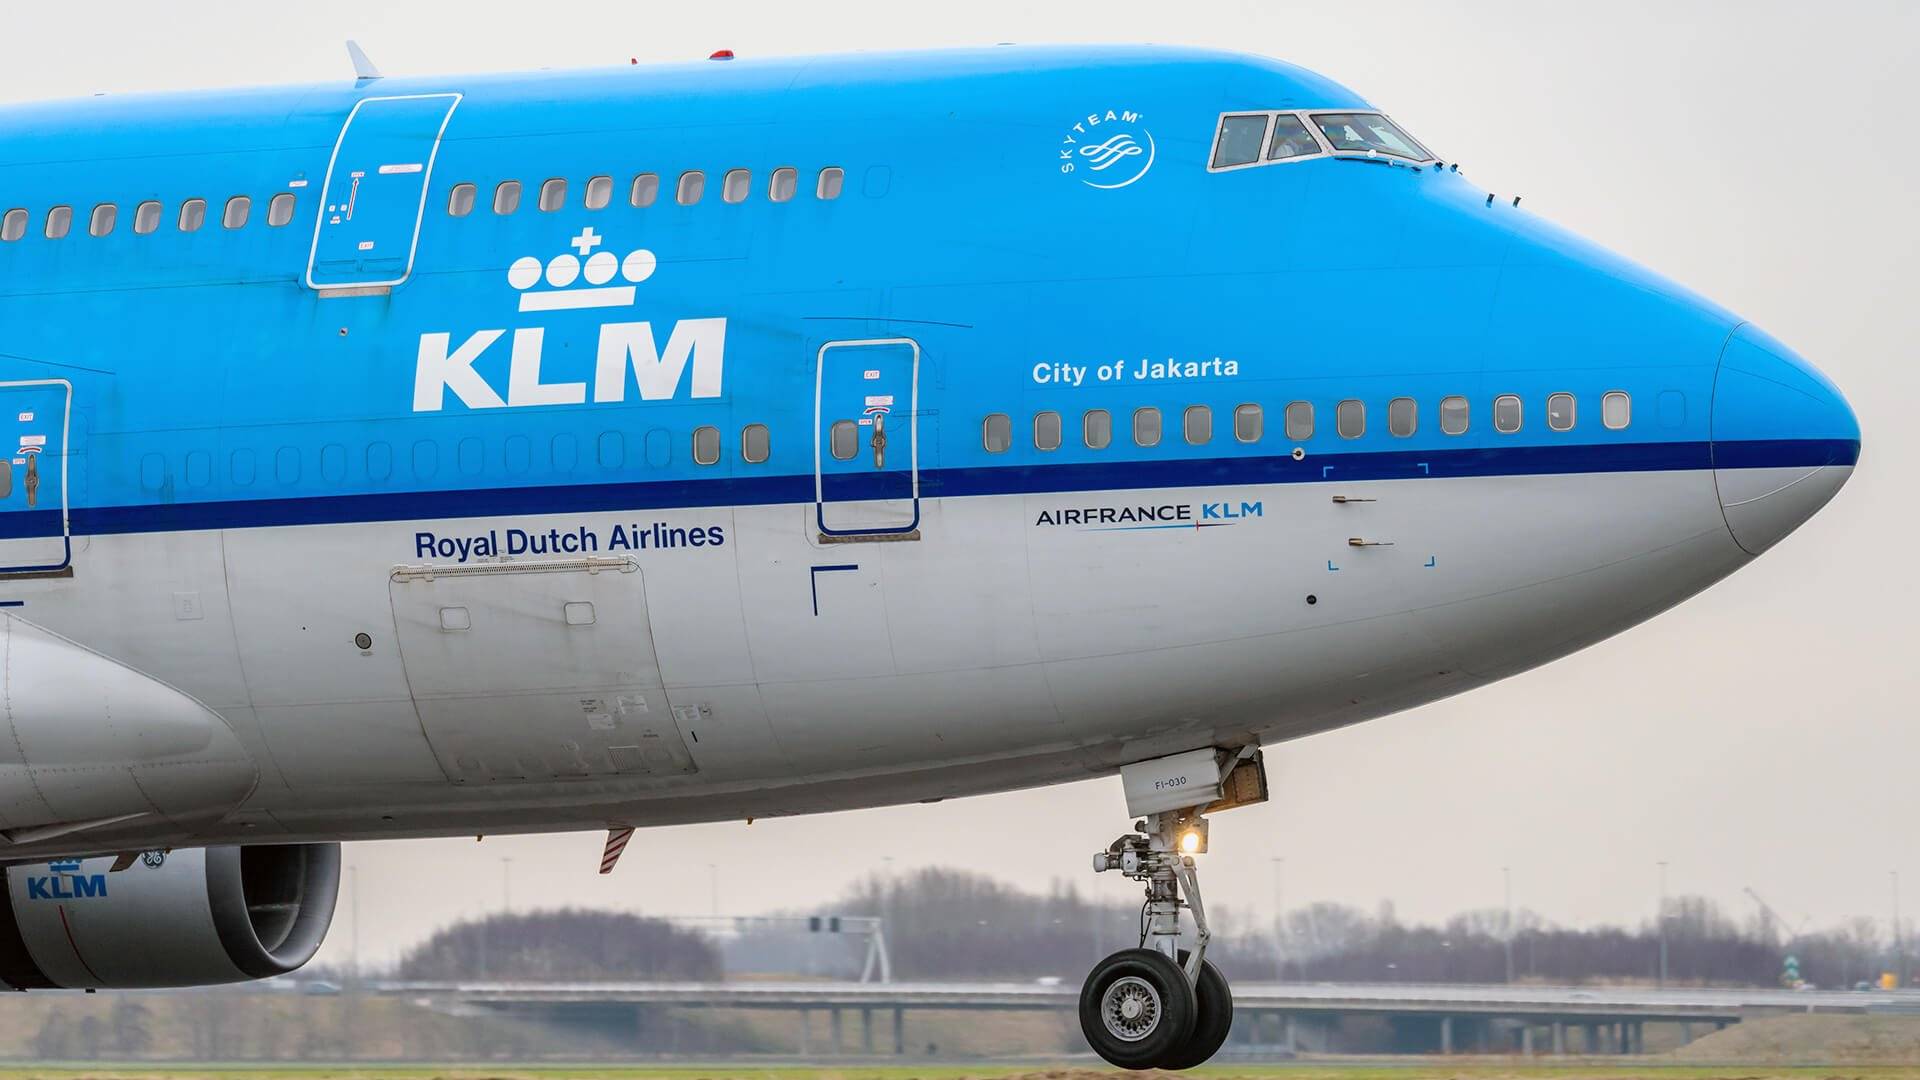 Безопасность klm – рейтинг авиакомпании, инциденты, катастрофы